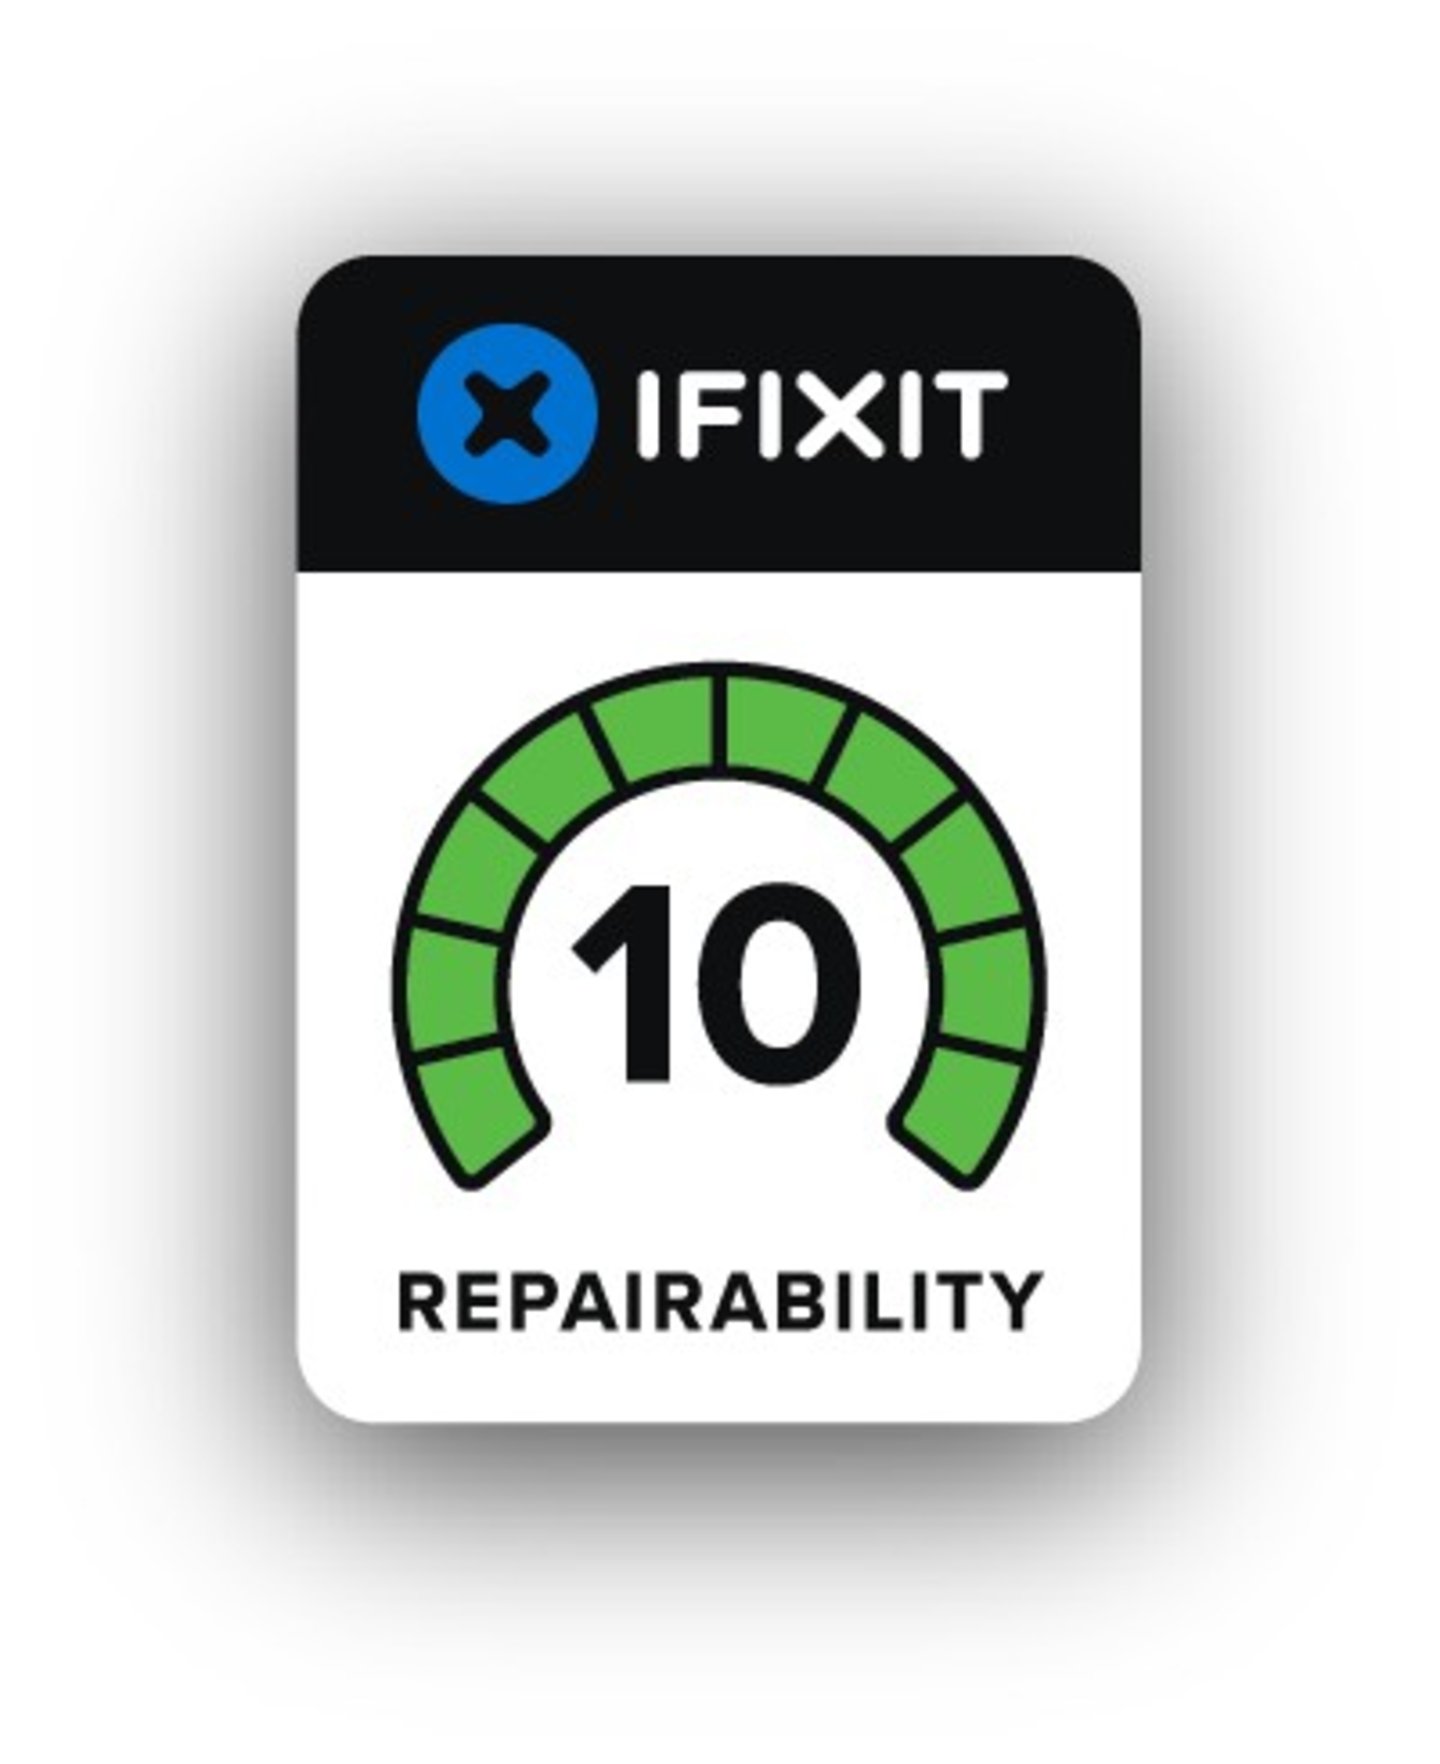 Este es el primer móvil con una reparabilidad de 10 según iFixit